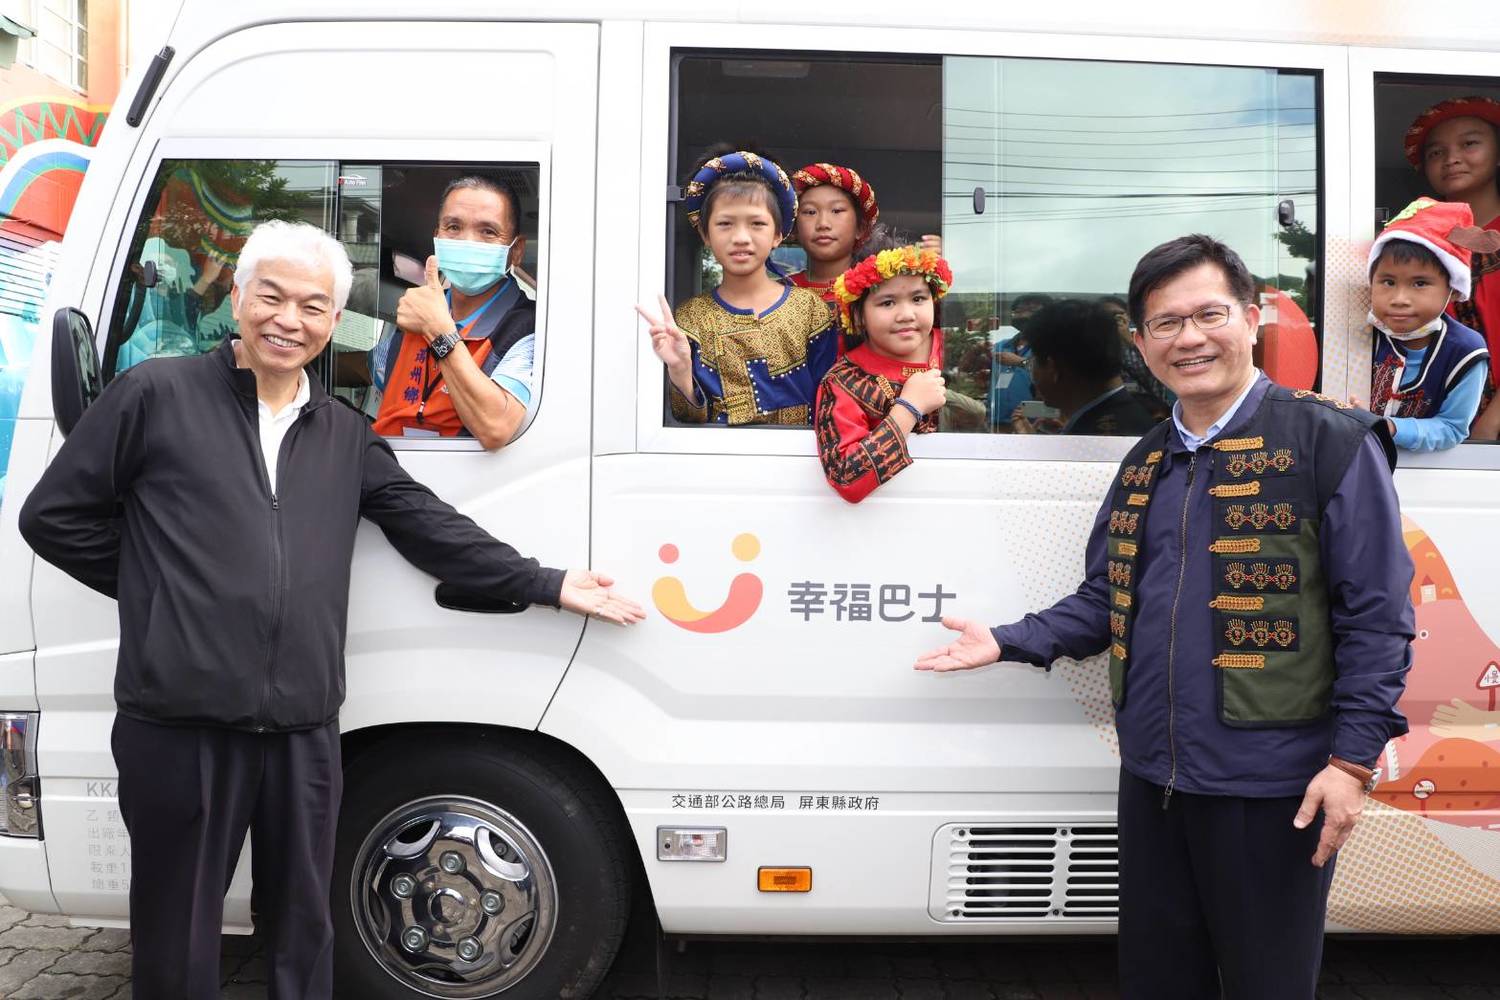 開放民間參與！幸福巴士2.0滿洲鄉示範上路